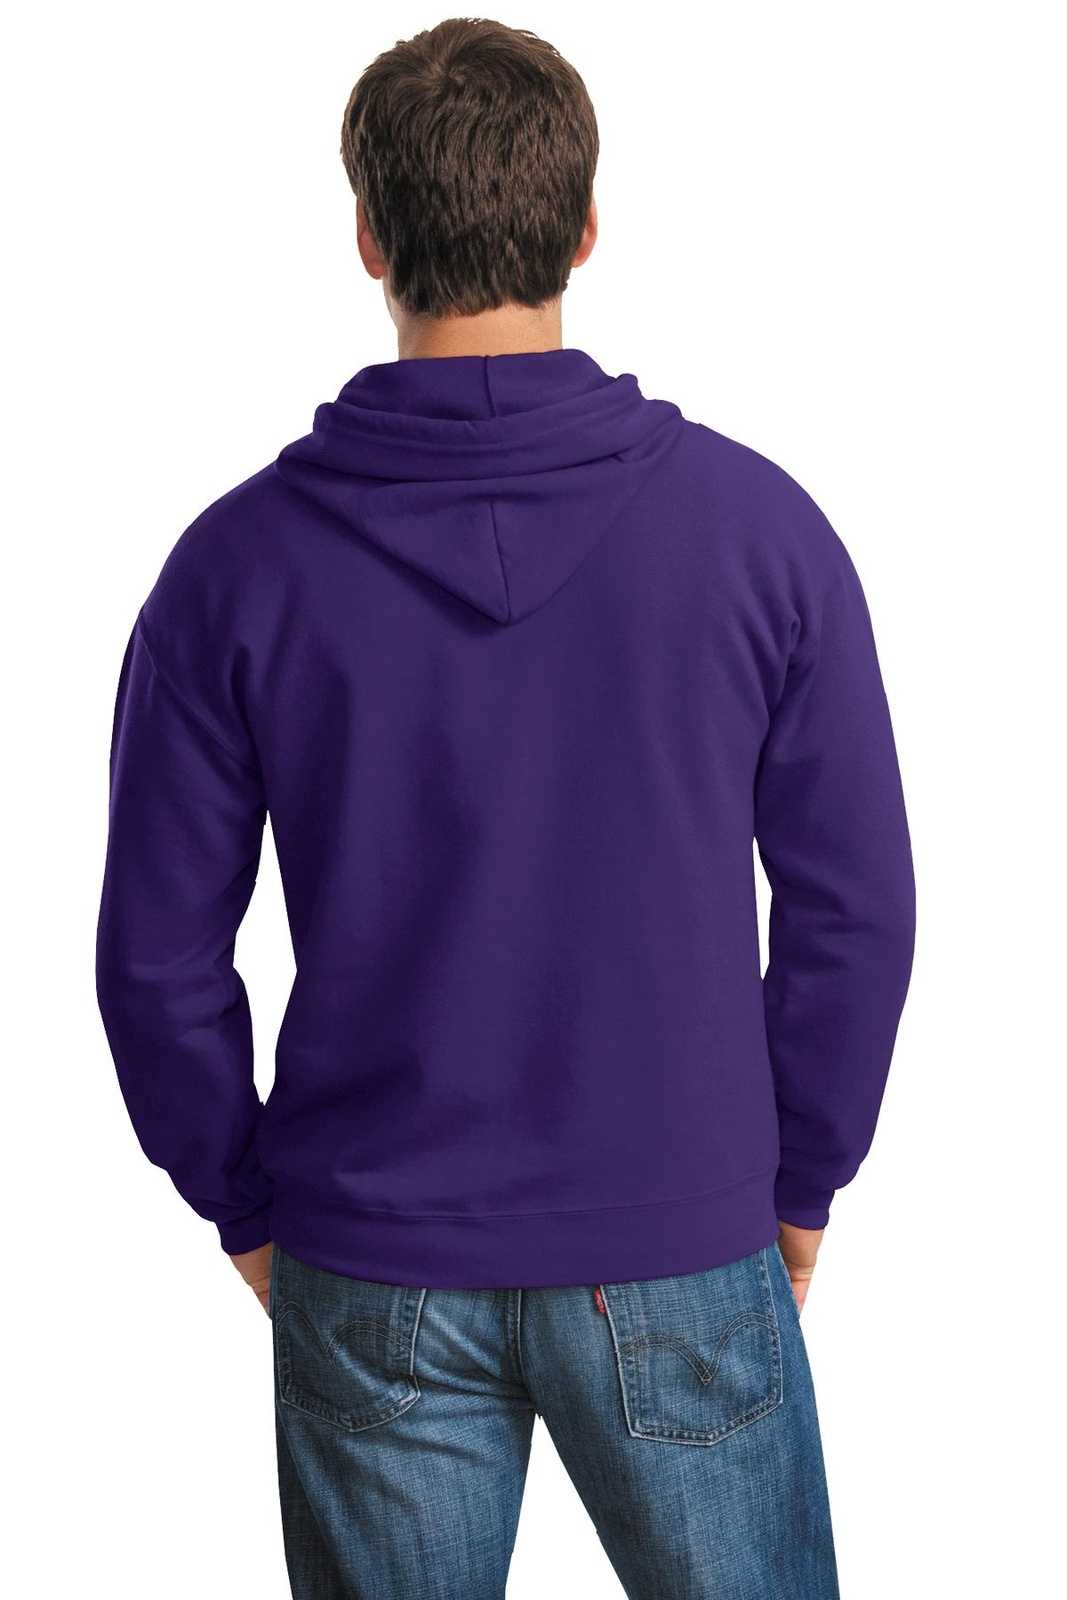 Gildan 18600 Heavy Blend Full-Zip Hooded Sweatshirt - Purple - HIT a Double